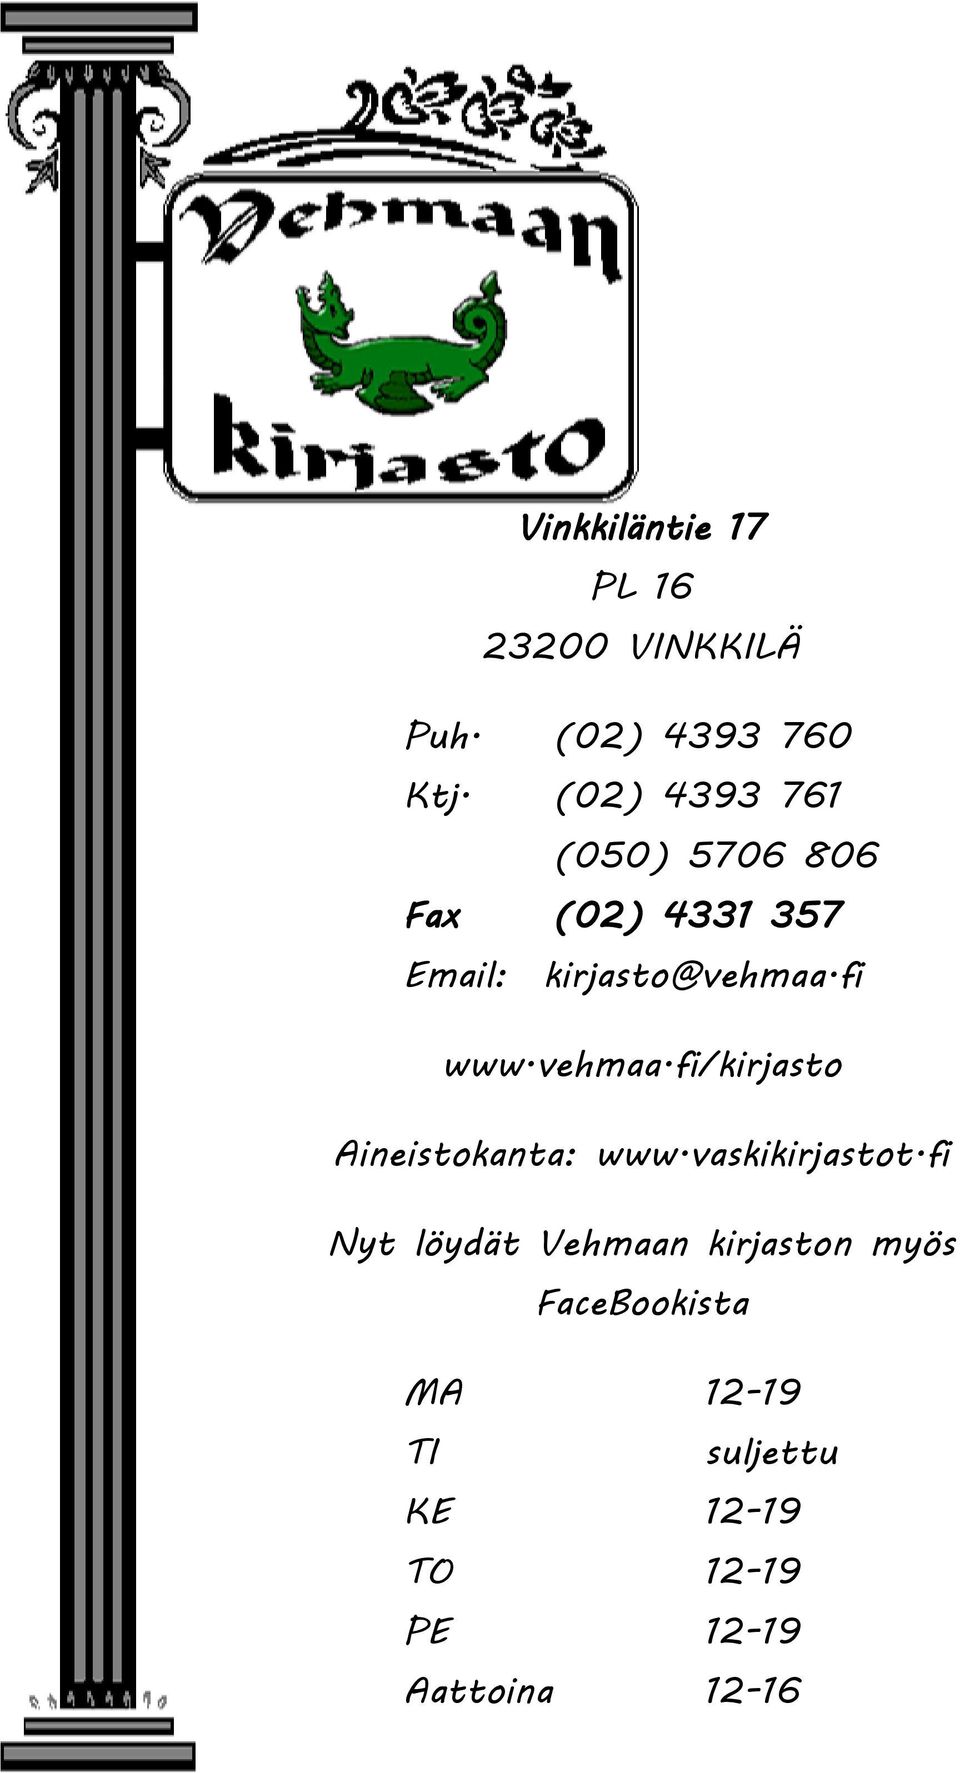 fi www.vehmaa.fi/kirjasto Aineistokanta: www.vaskikirjastot.